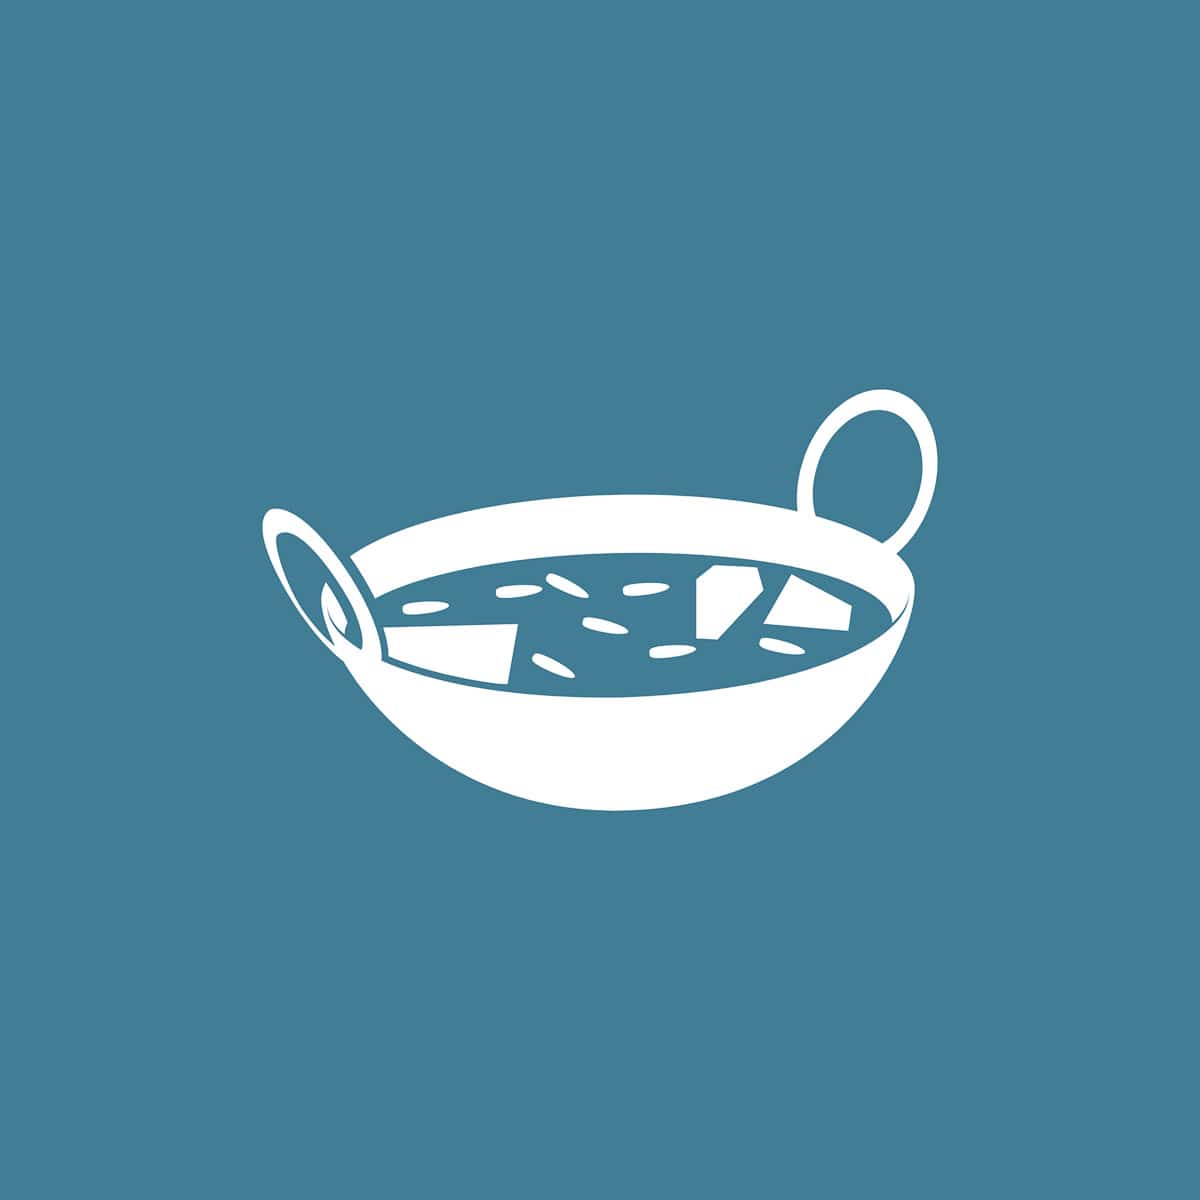 Een tekening van een wok gevuld met curry op een blauwe ondergrond